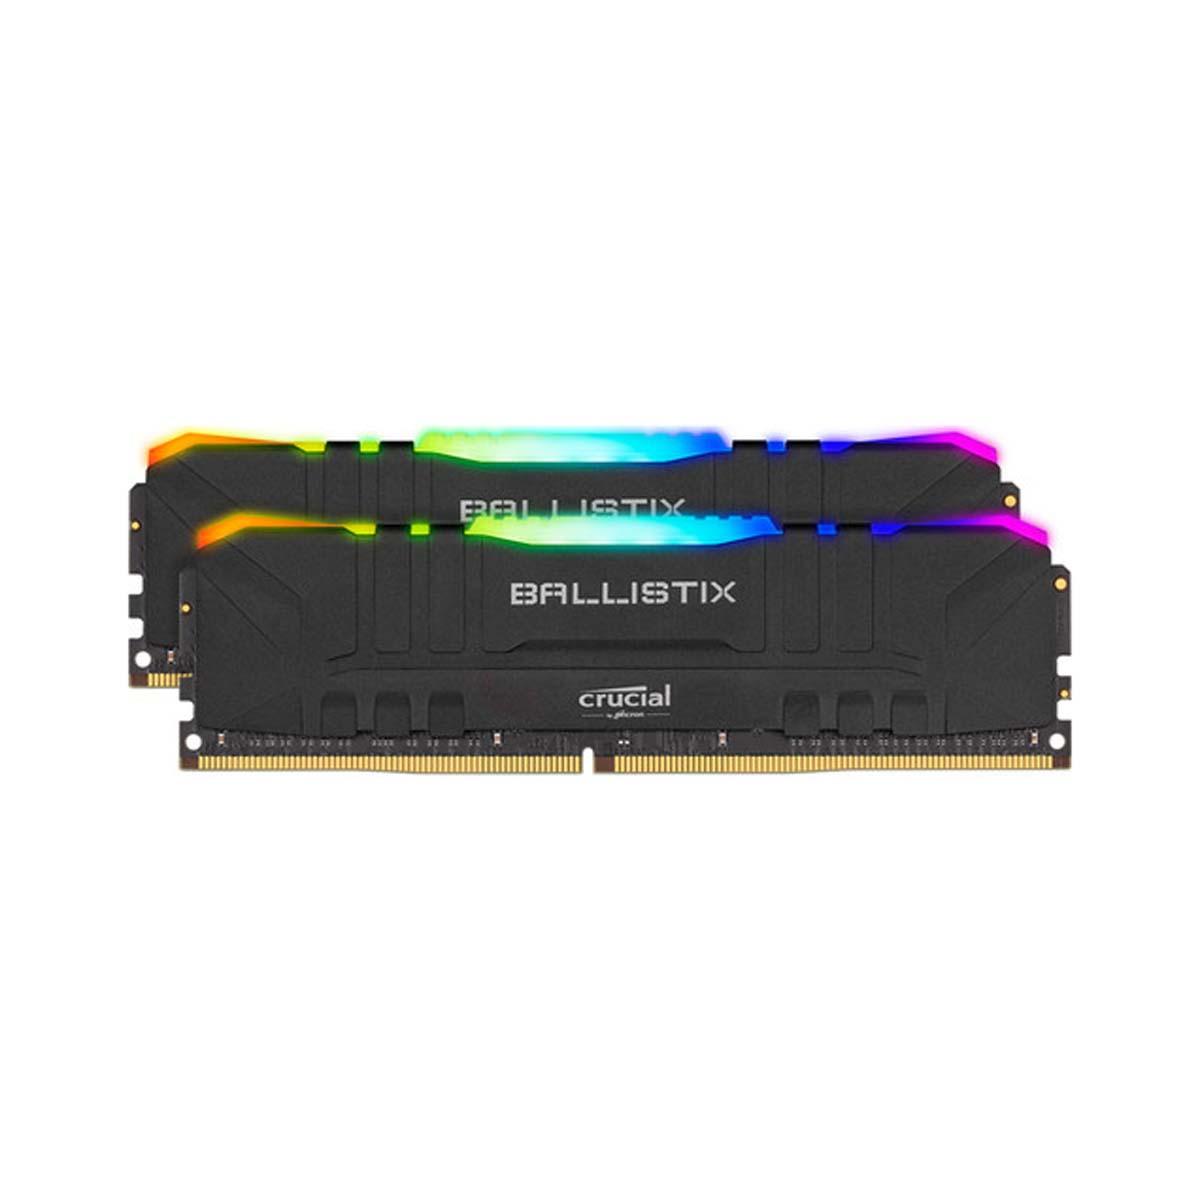 MEMORIA DIMM DDR4 CRUCIAL BALLISTIX (BL2K8G30C15U4BL) RGB 16GB KIT (2X8GB) 3000MHZ, BLACK HS, CL16 - BL2K8G30C15U4BL